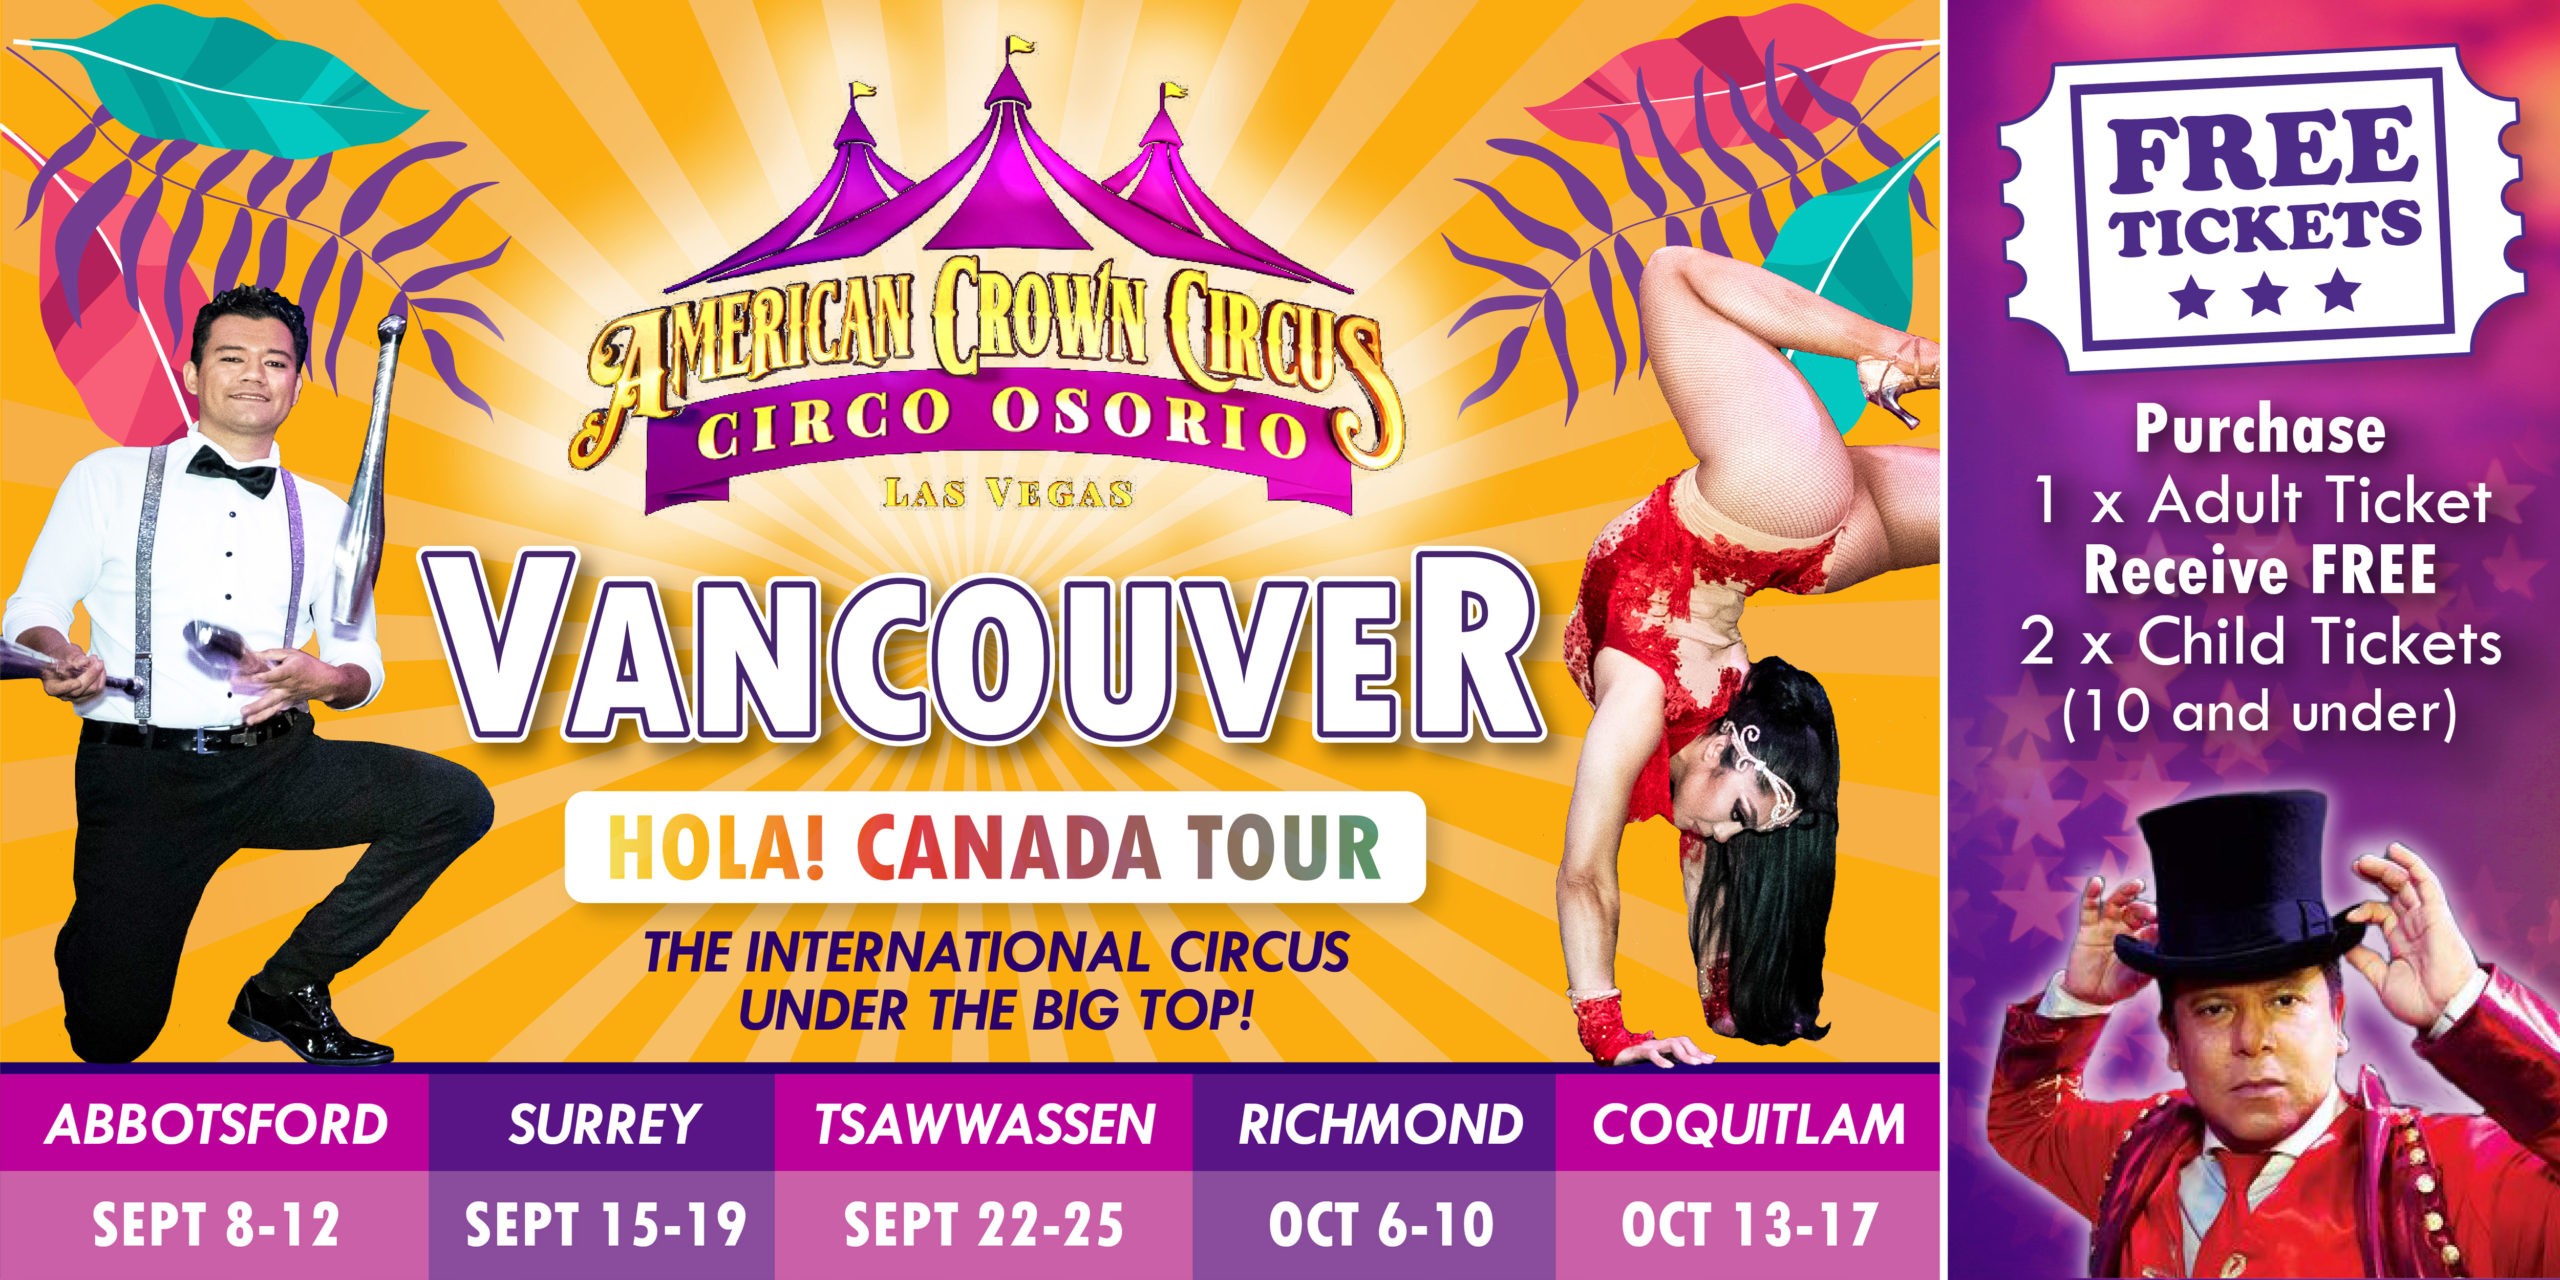 Cirque de la couronne américaine - Circo Osorio